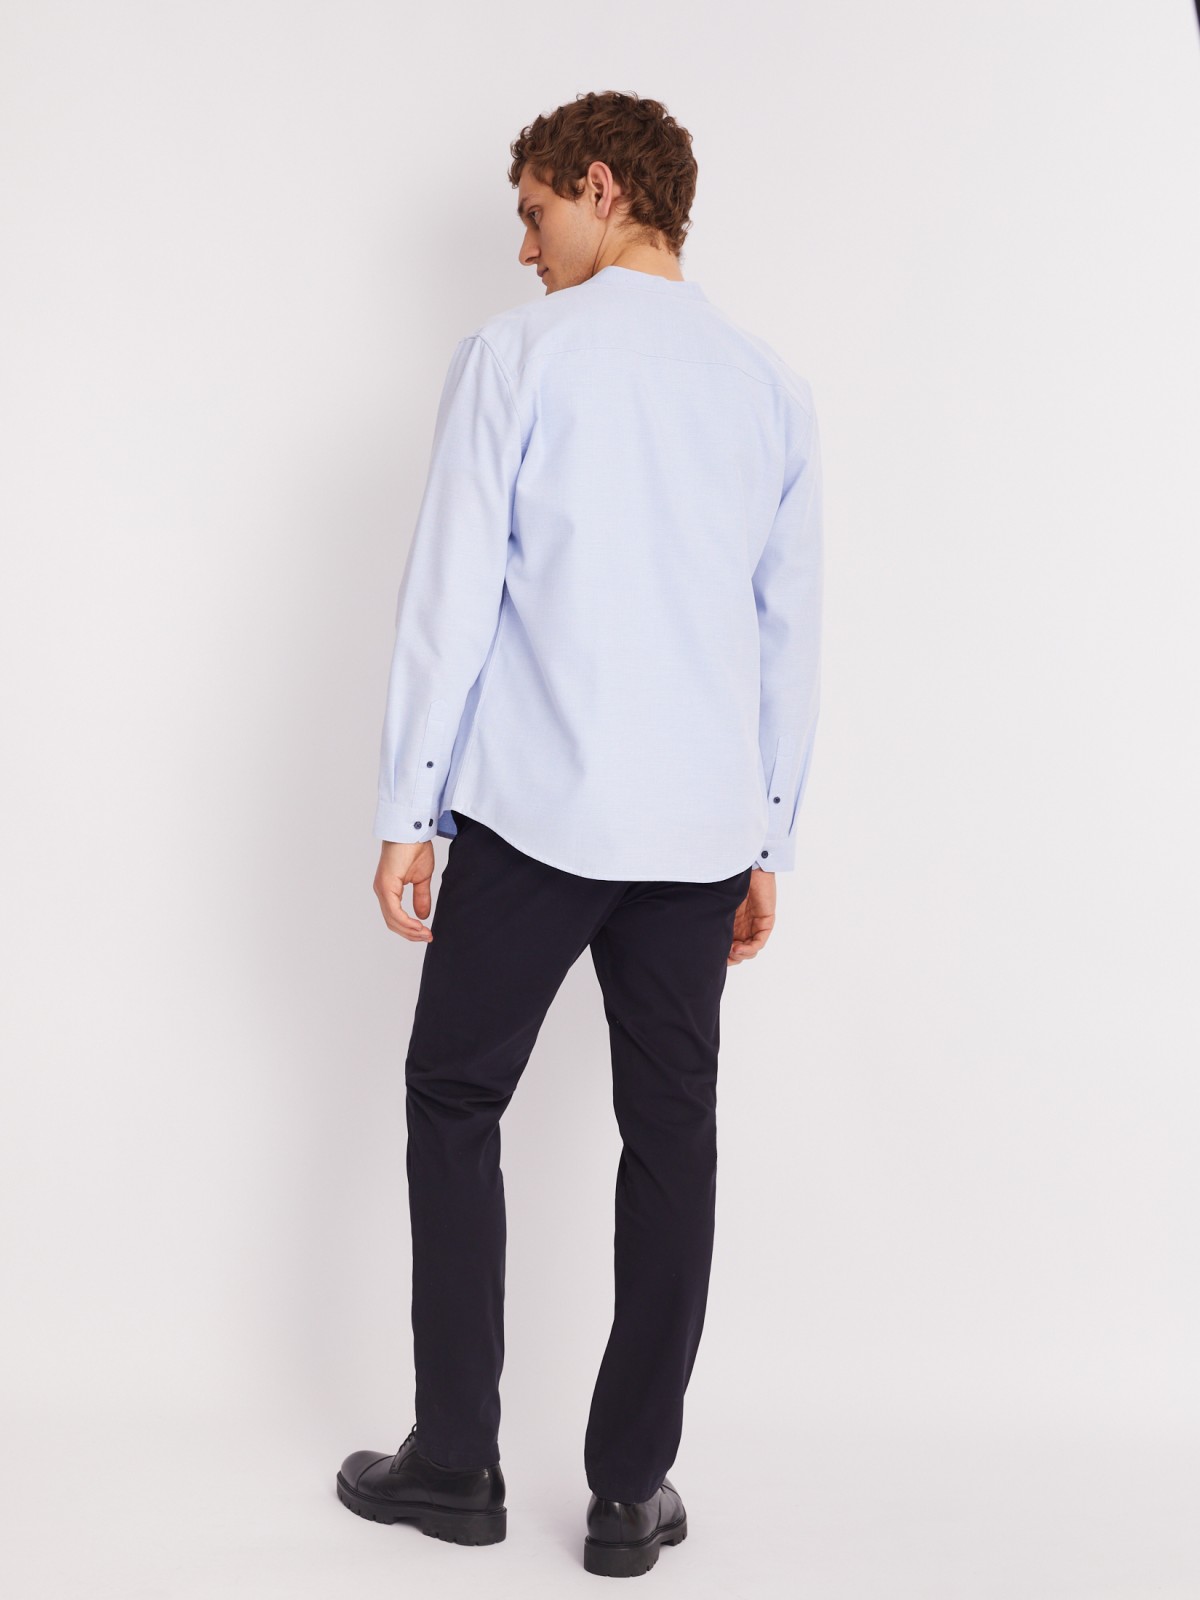 Офисная рубашка с воротником-стойкой и длинным рукавом zolla 013312159023, цвет светло-голубой, размер S - фото 6